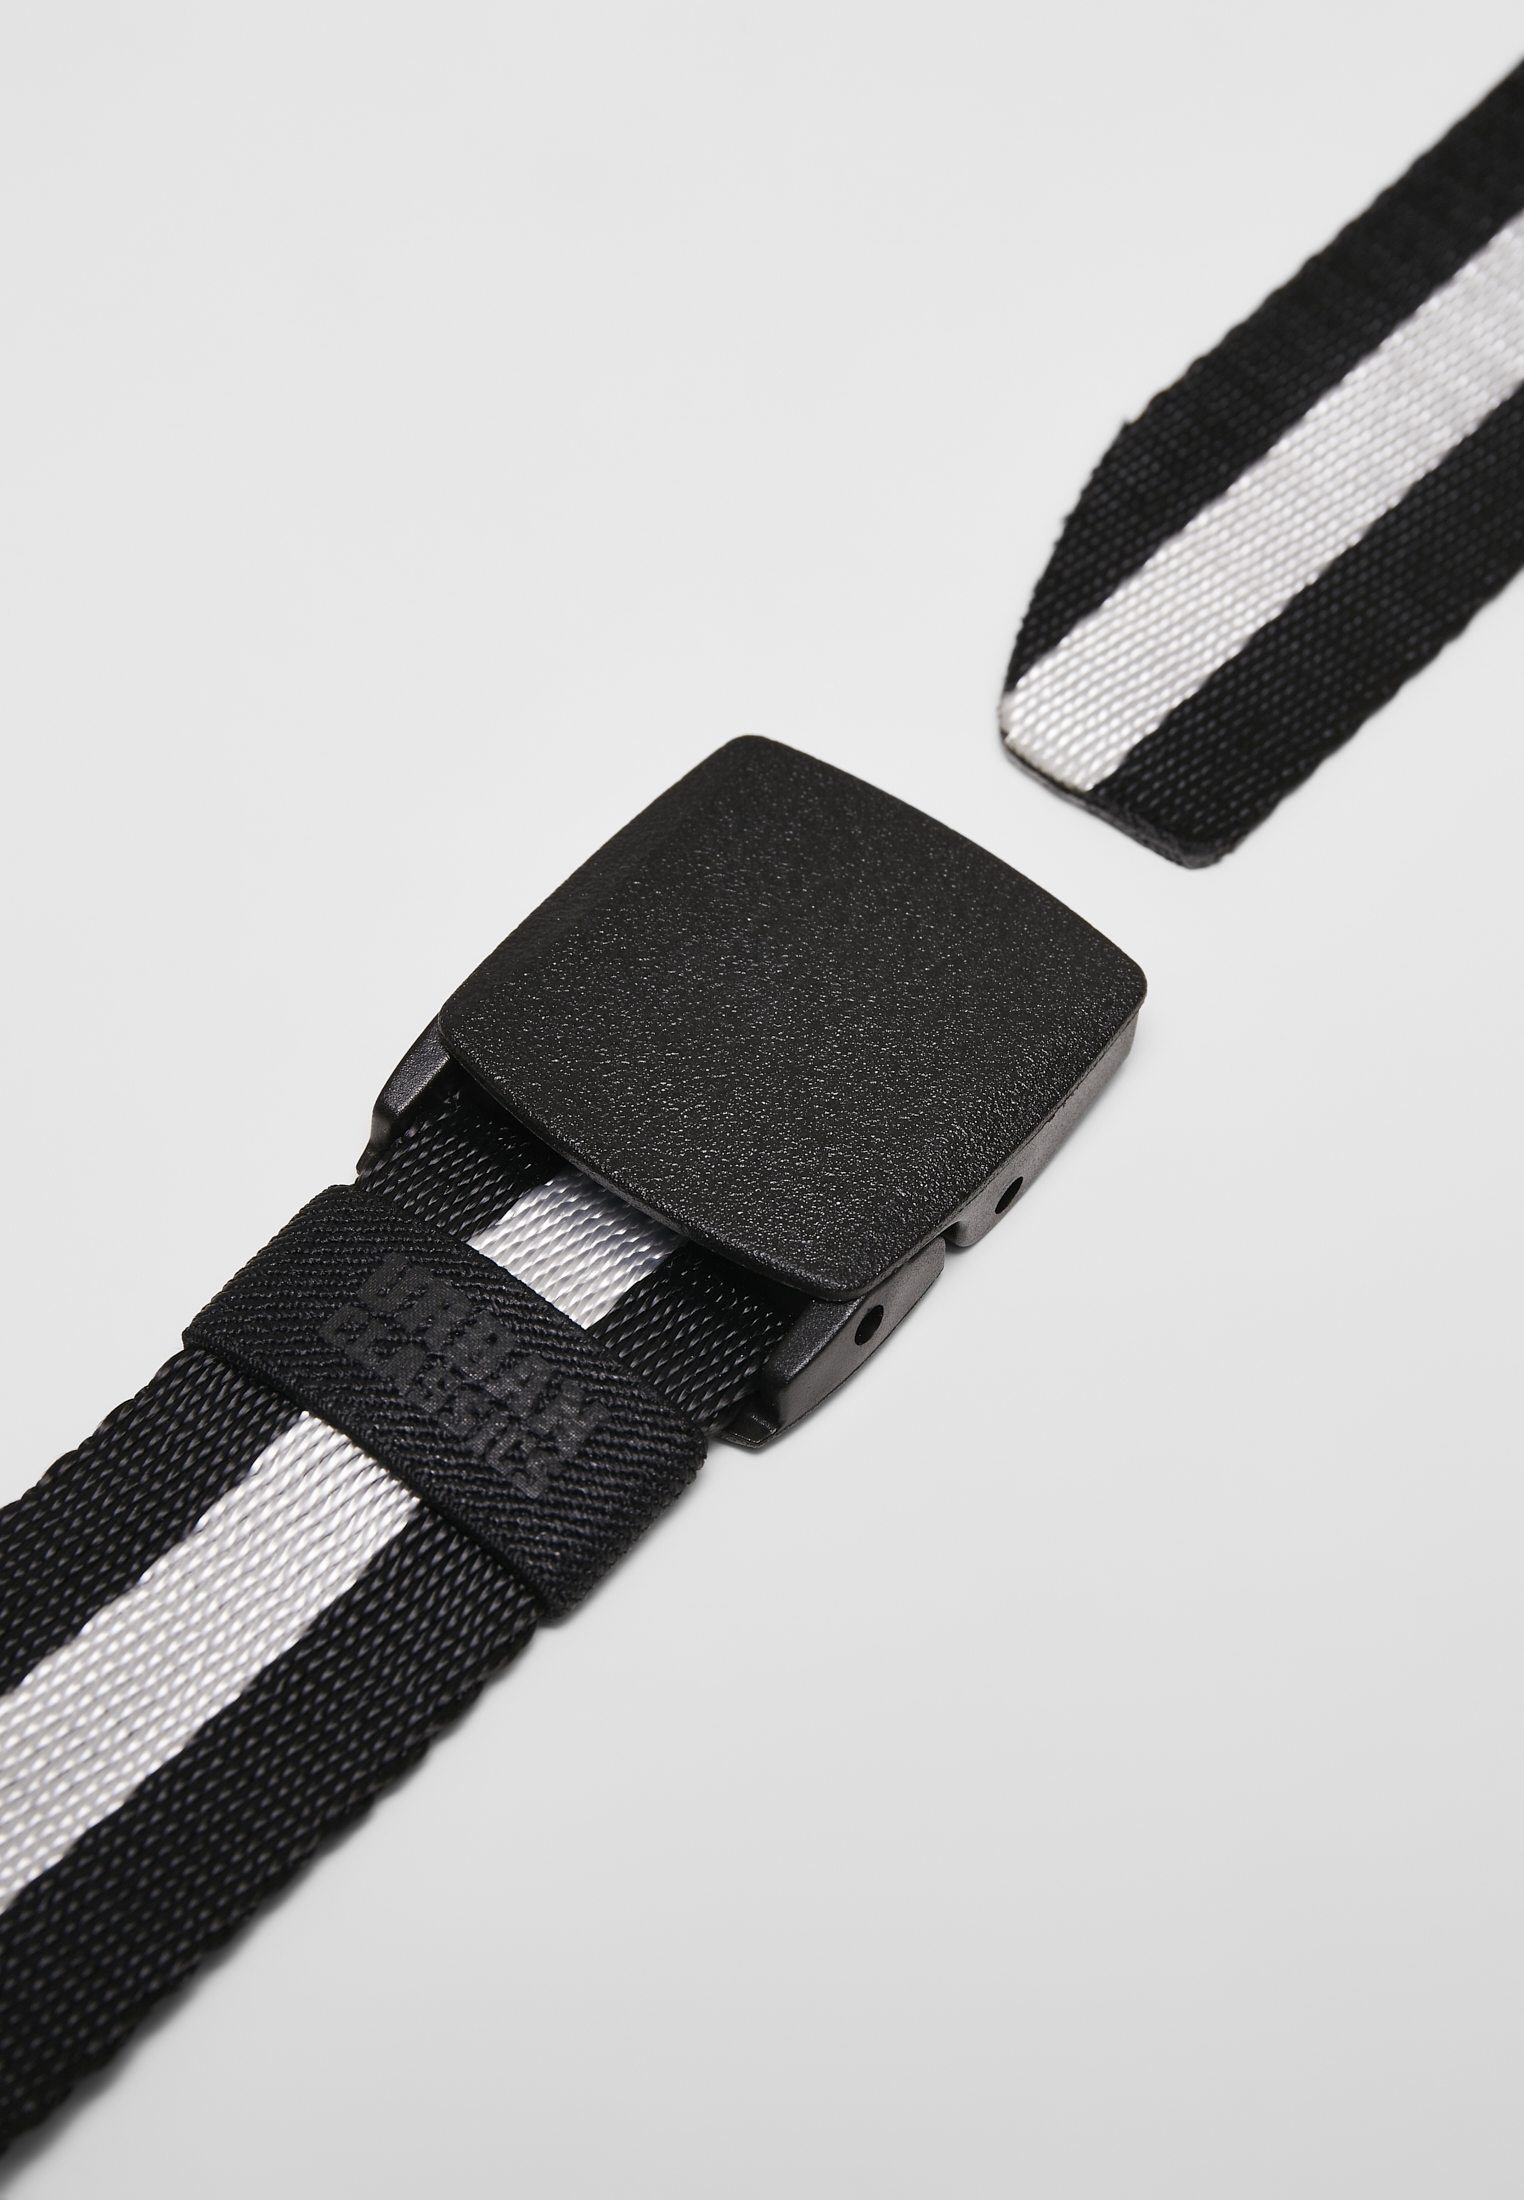 G?rtel Centre Stripe Belt in Farbe black